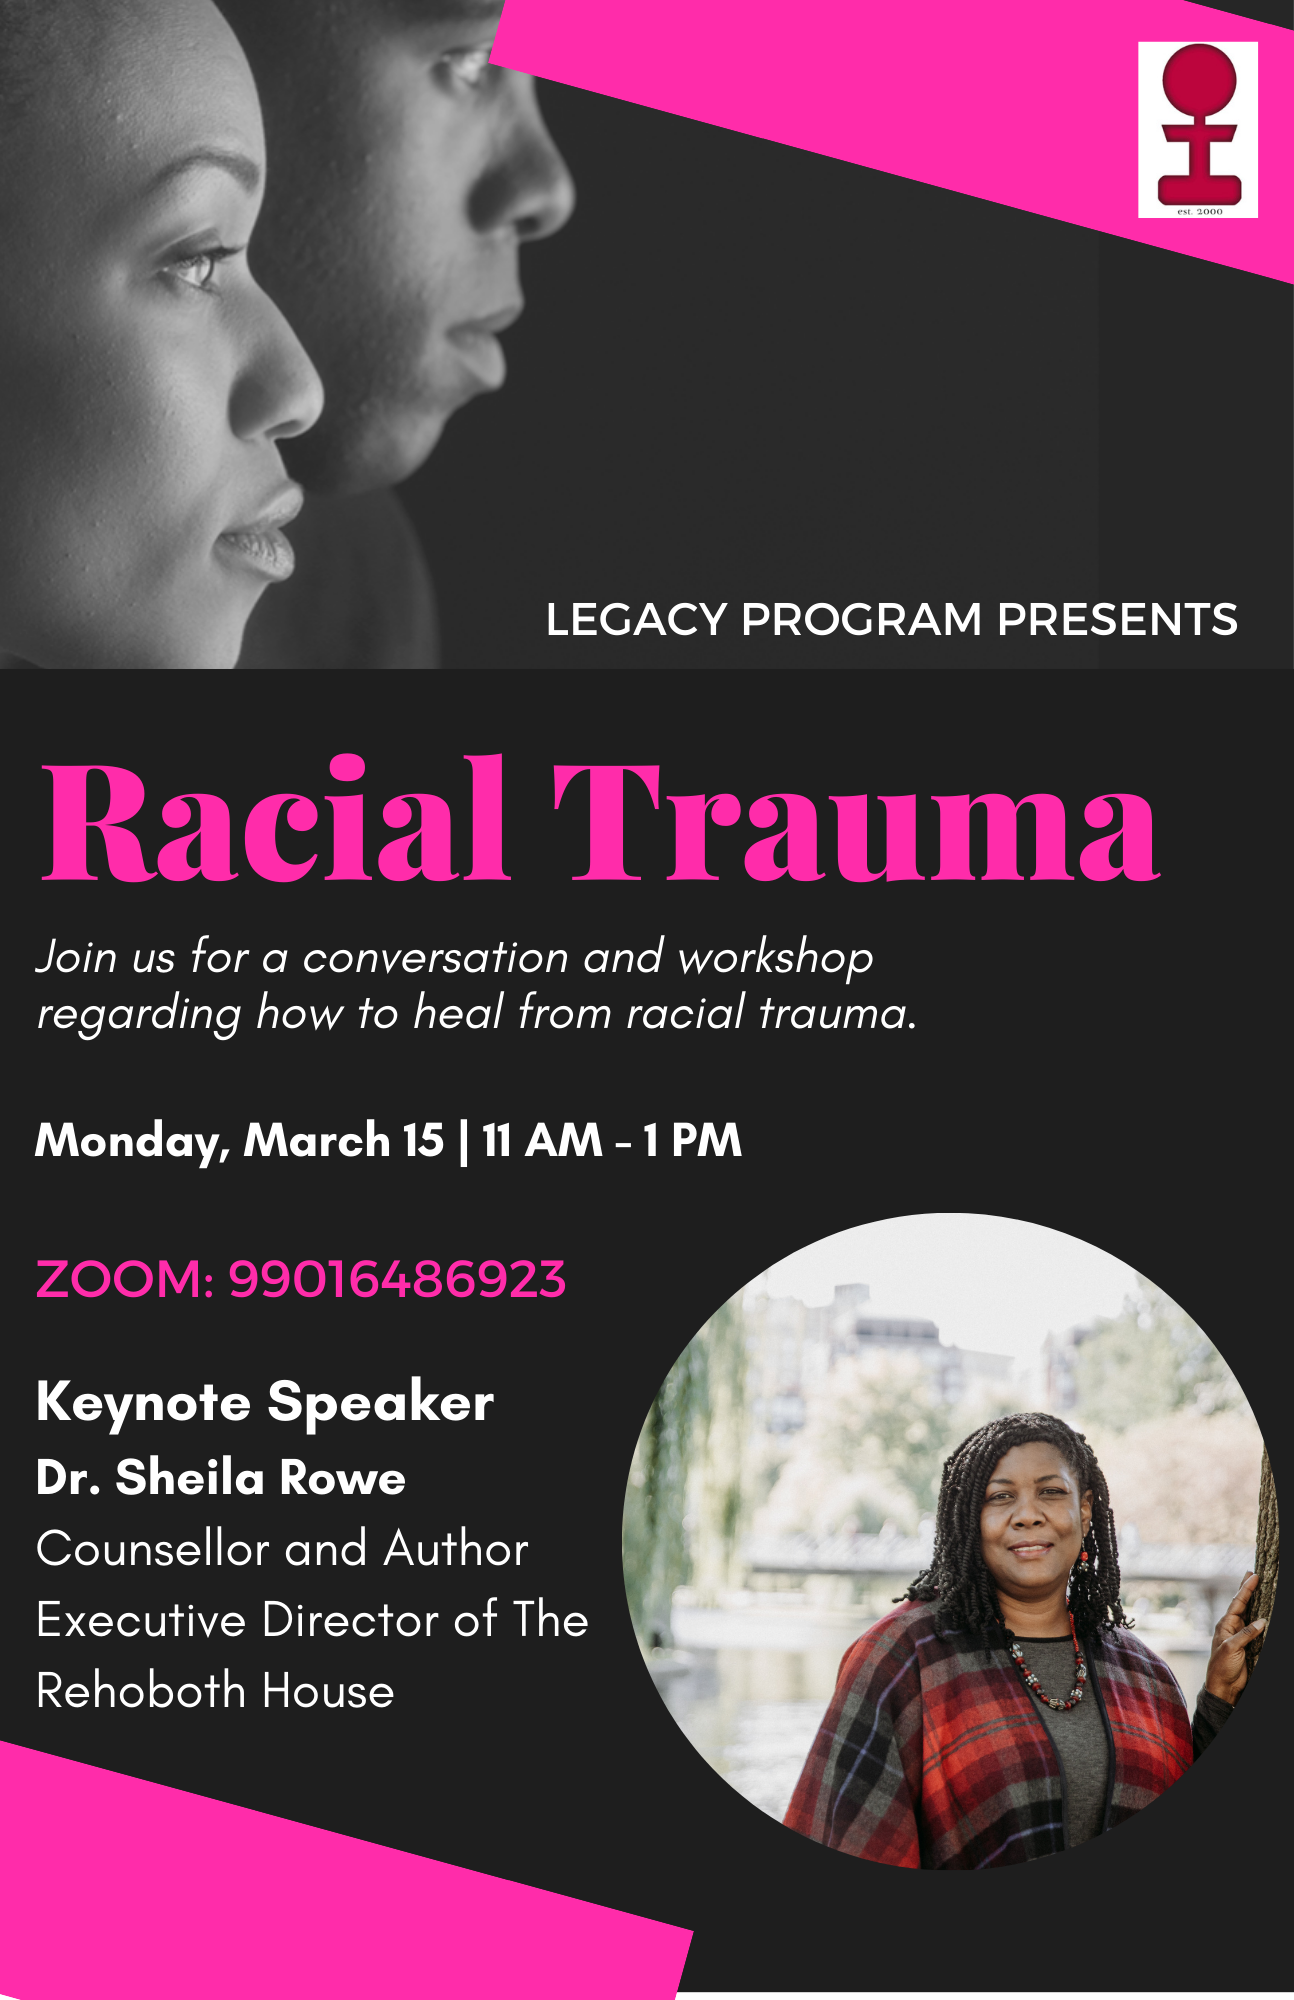 Racial Trauma event flyer